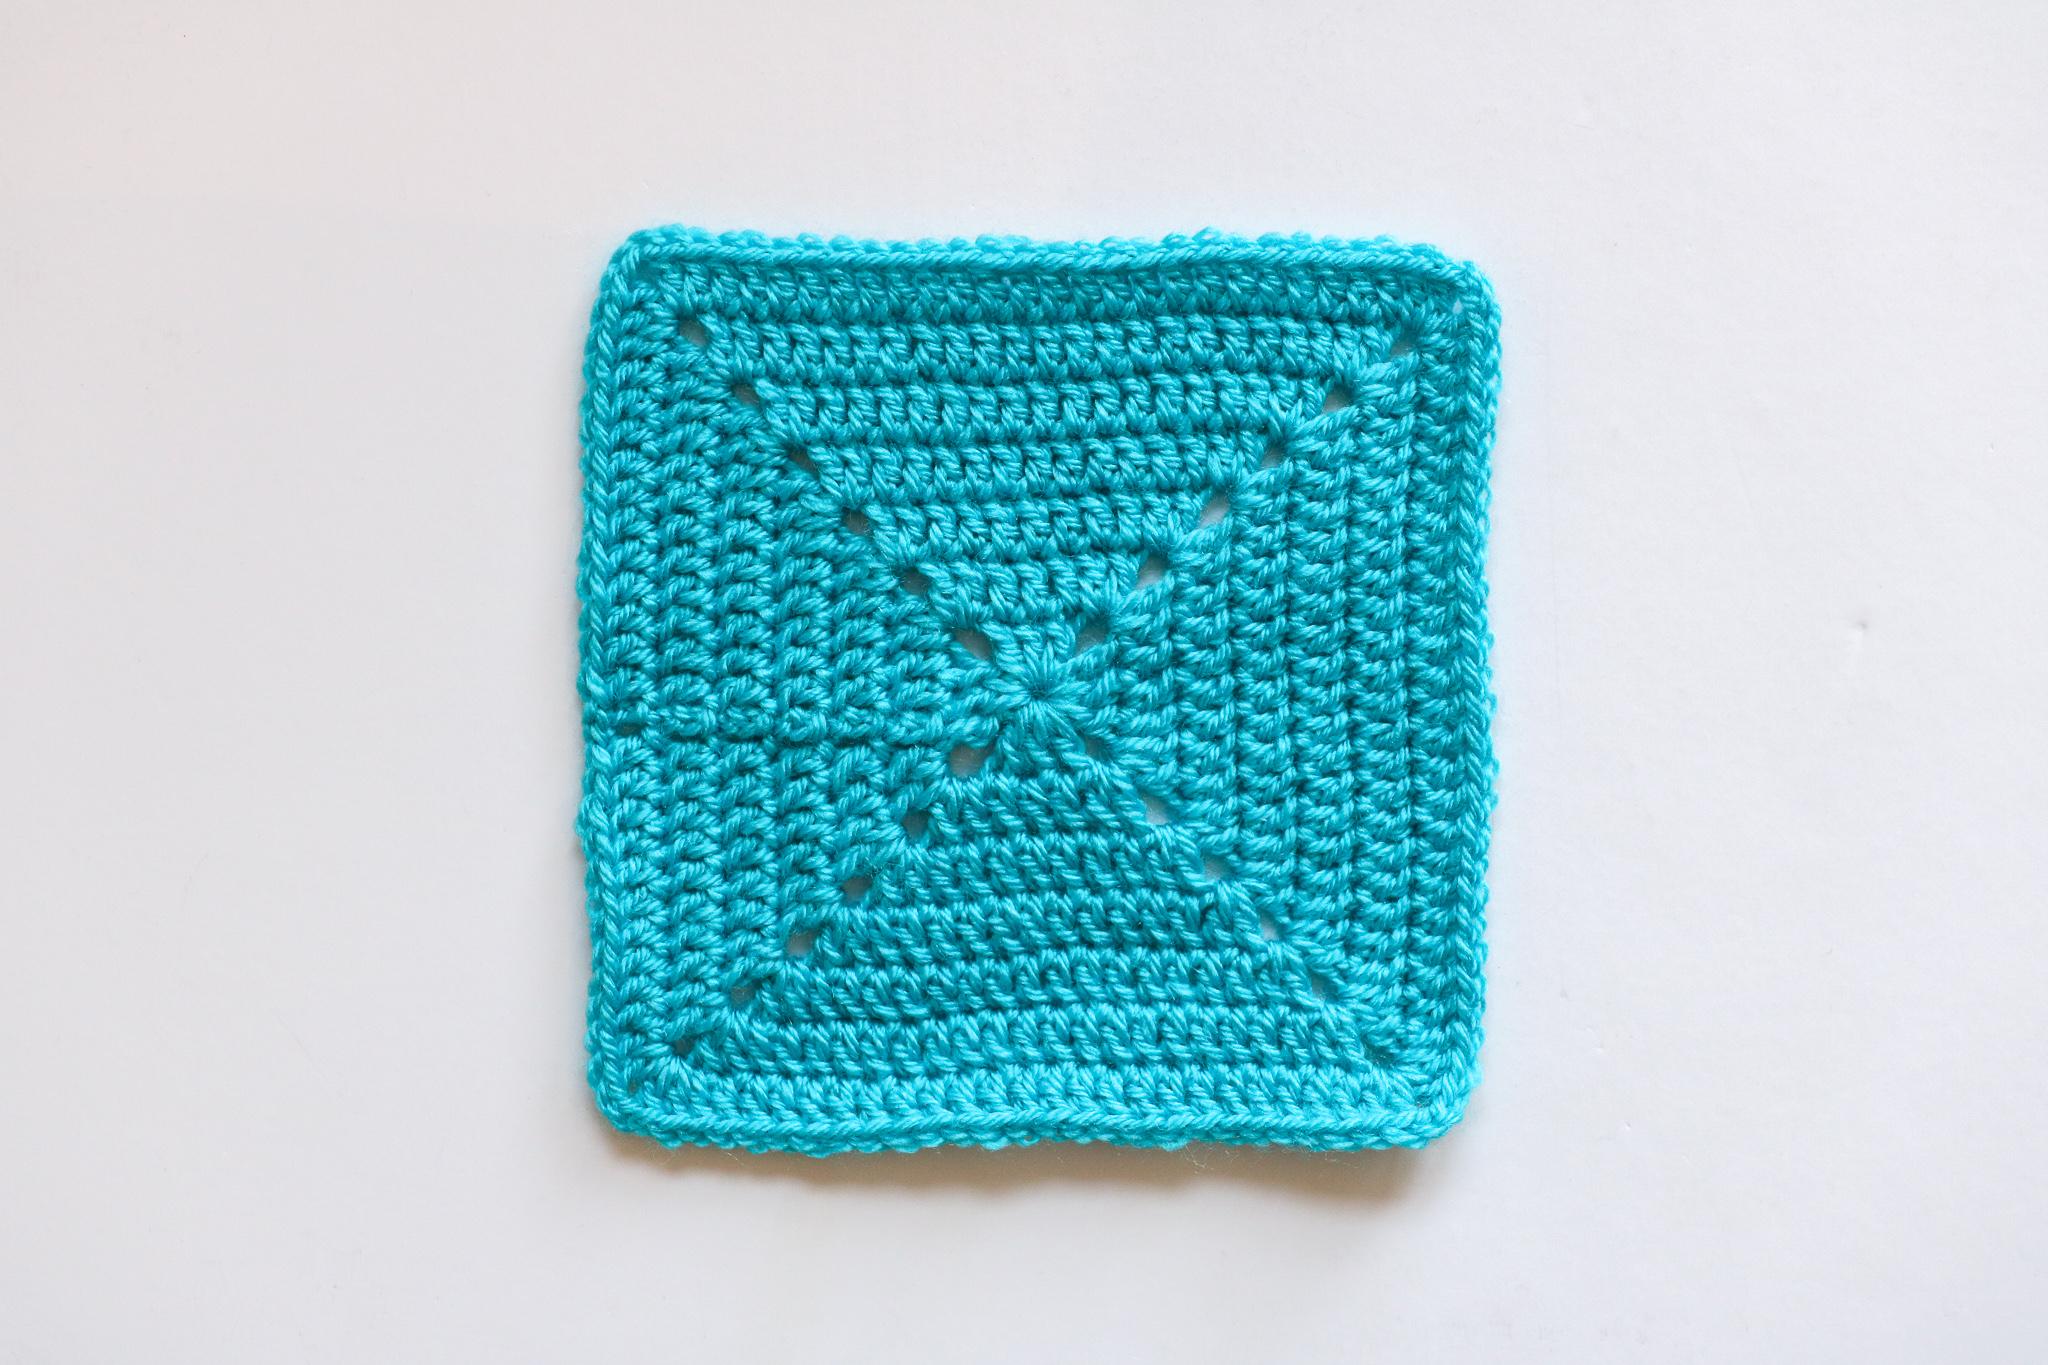 Solid Granny Square Pattern  Crochet Granny Square Pattern